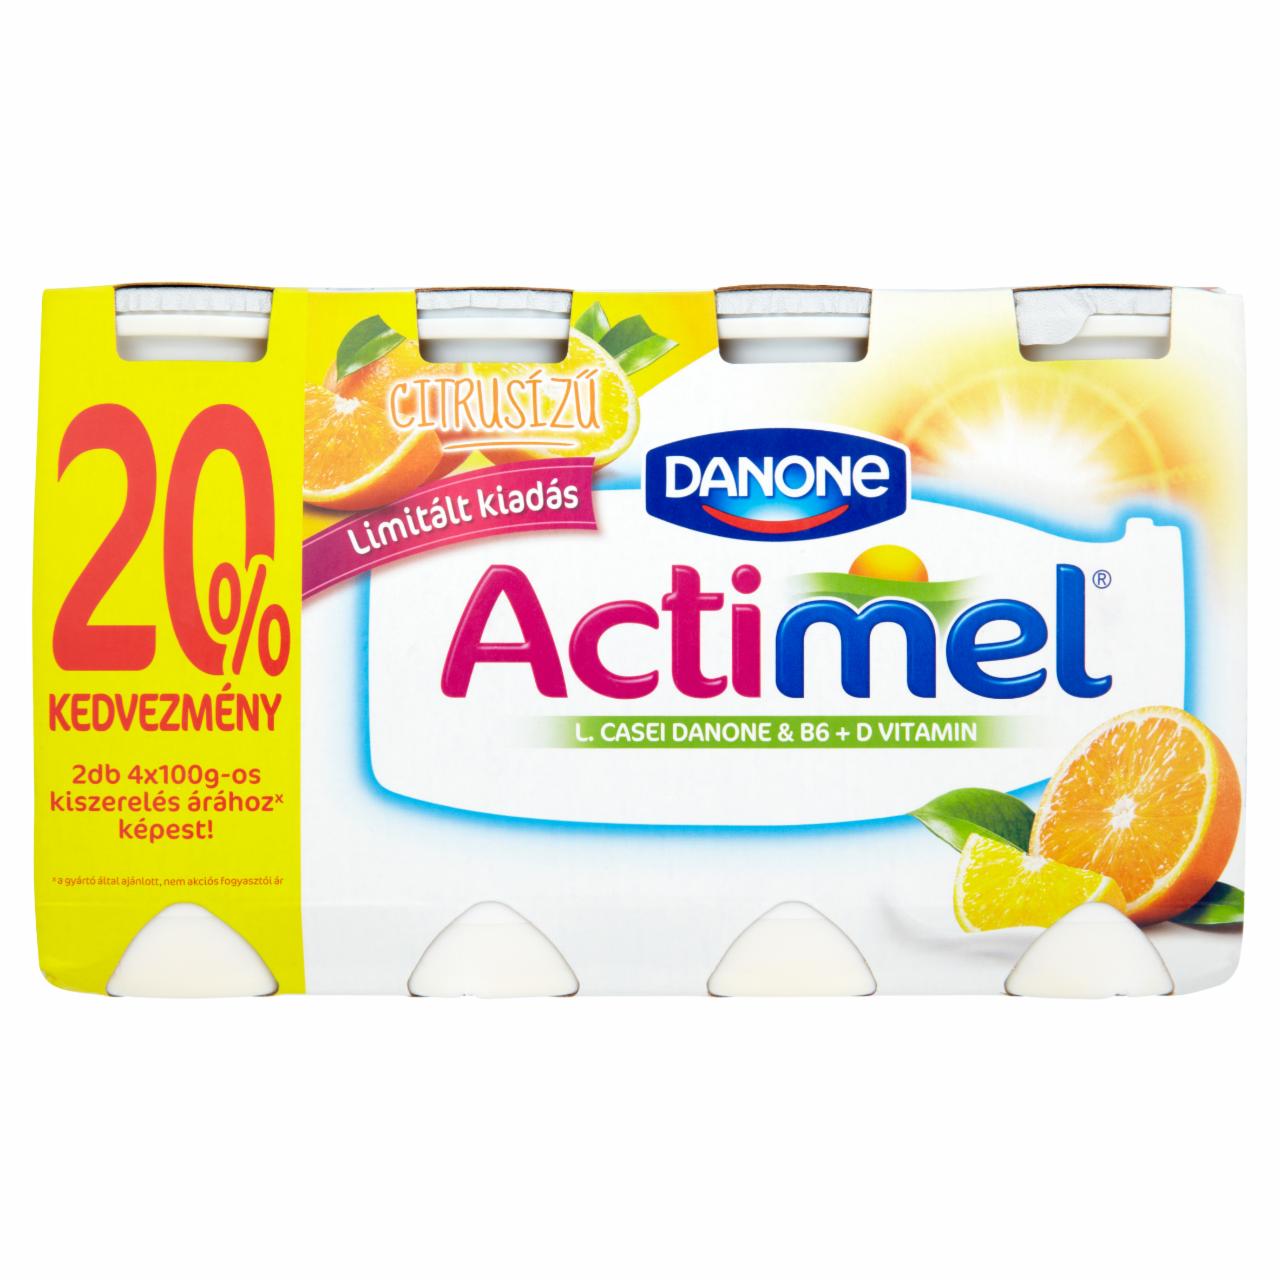 Képek - Danone Actimel zsírszegény, élőflórás, citrusízű joghurtital 8 x 100 g